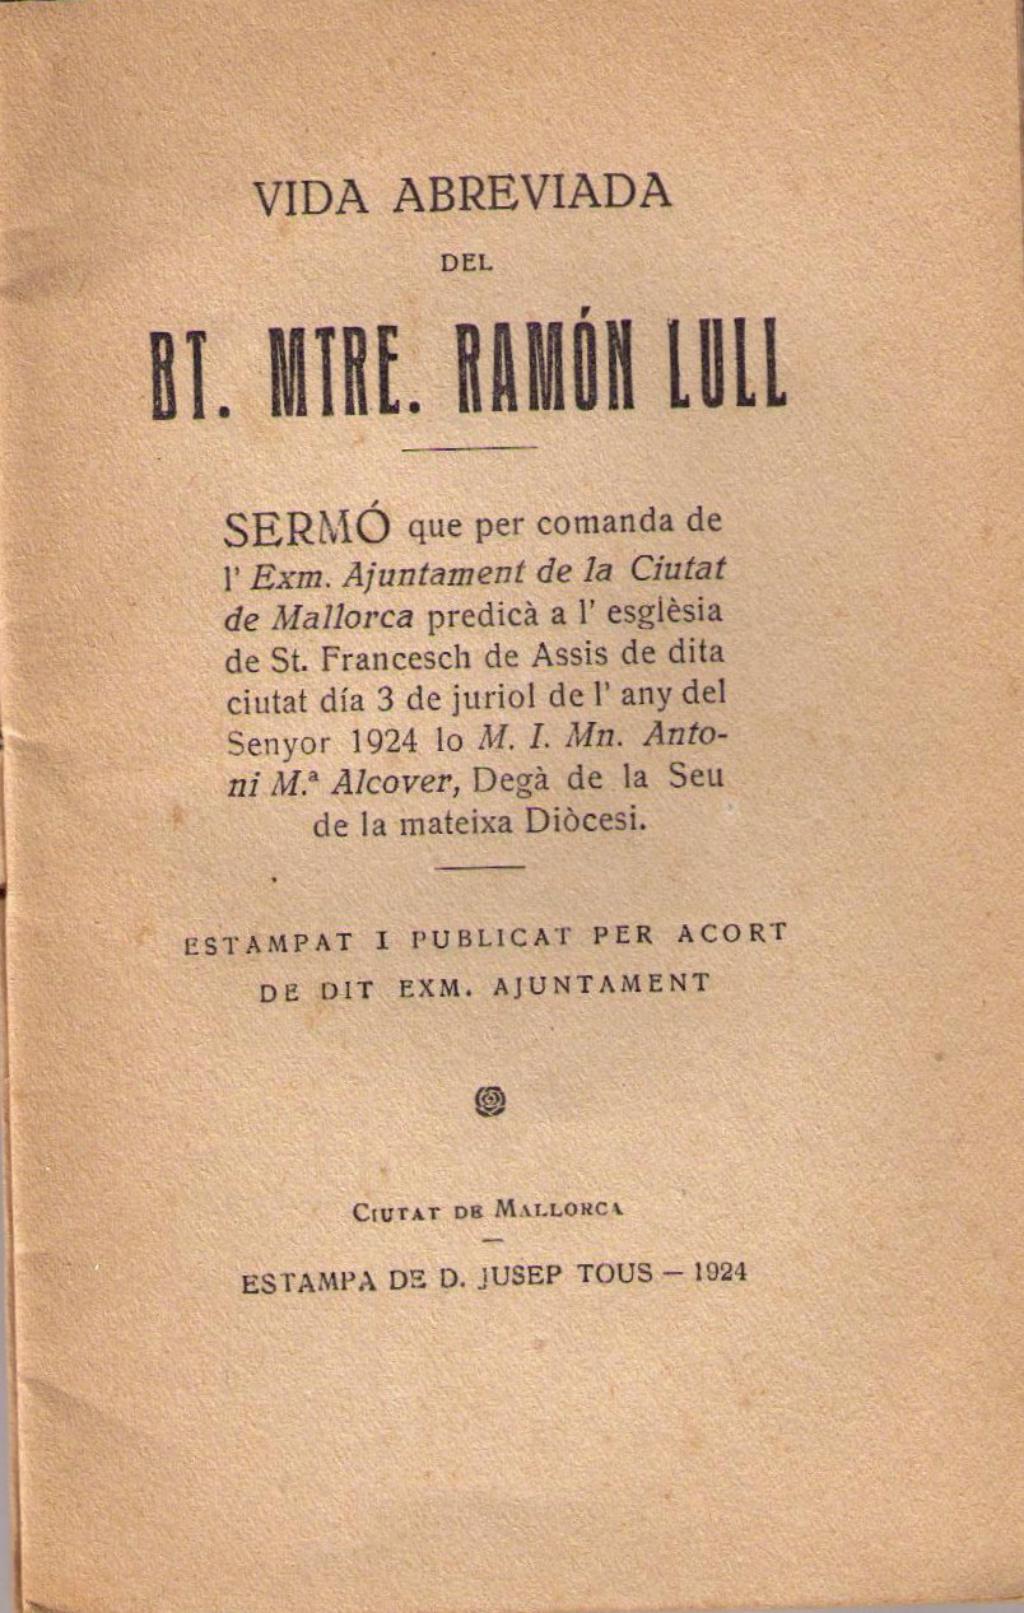 Coberta de Vida Abreviada del Bt. Mtre. Ramón Llull